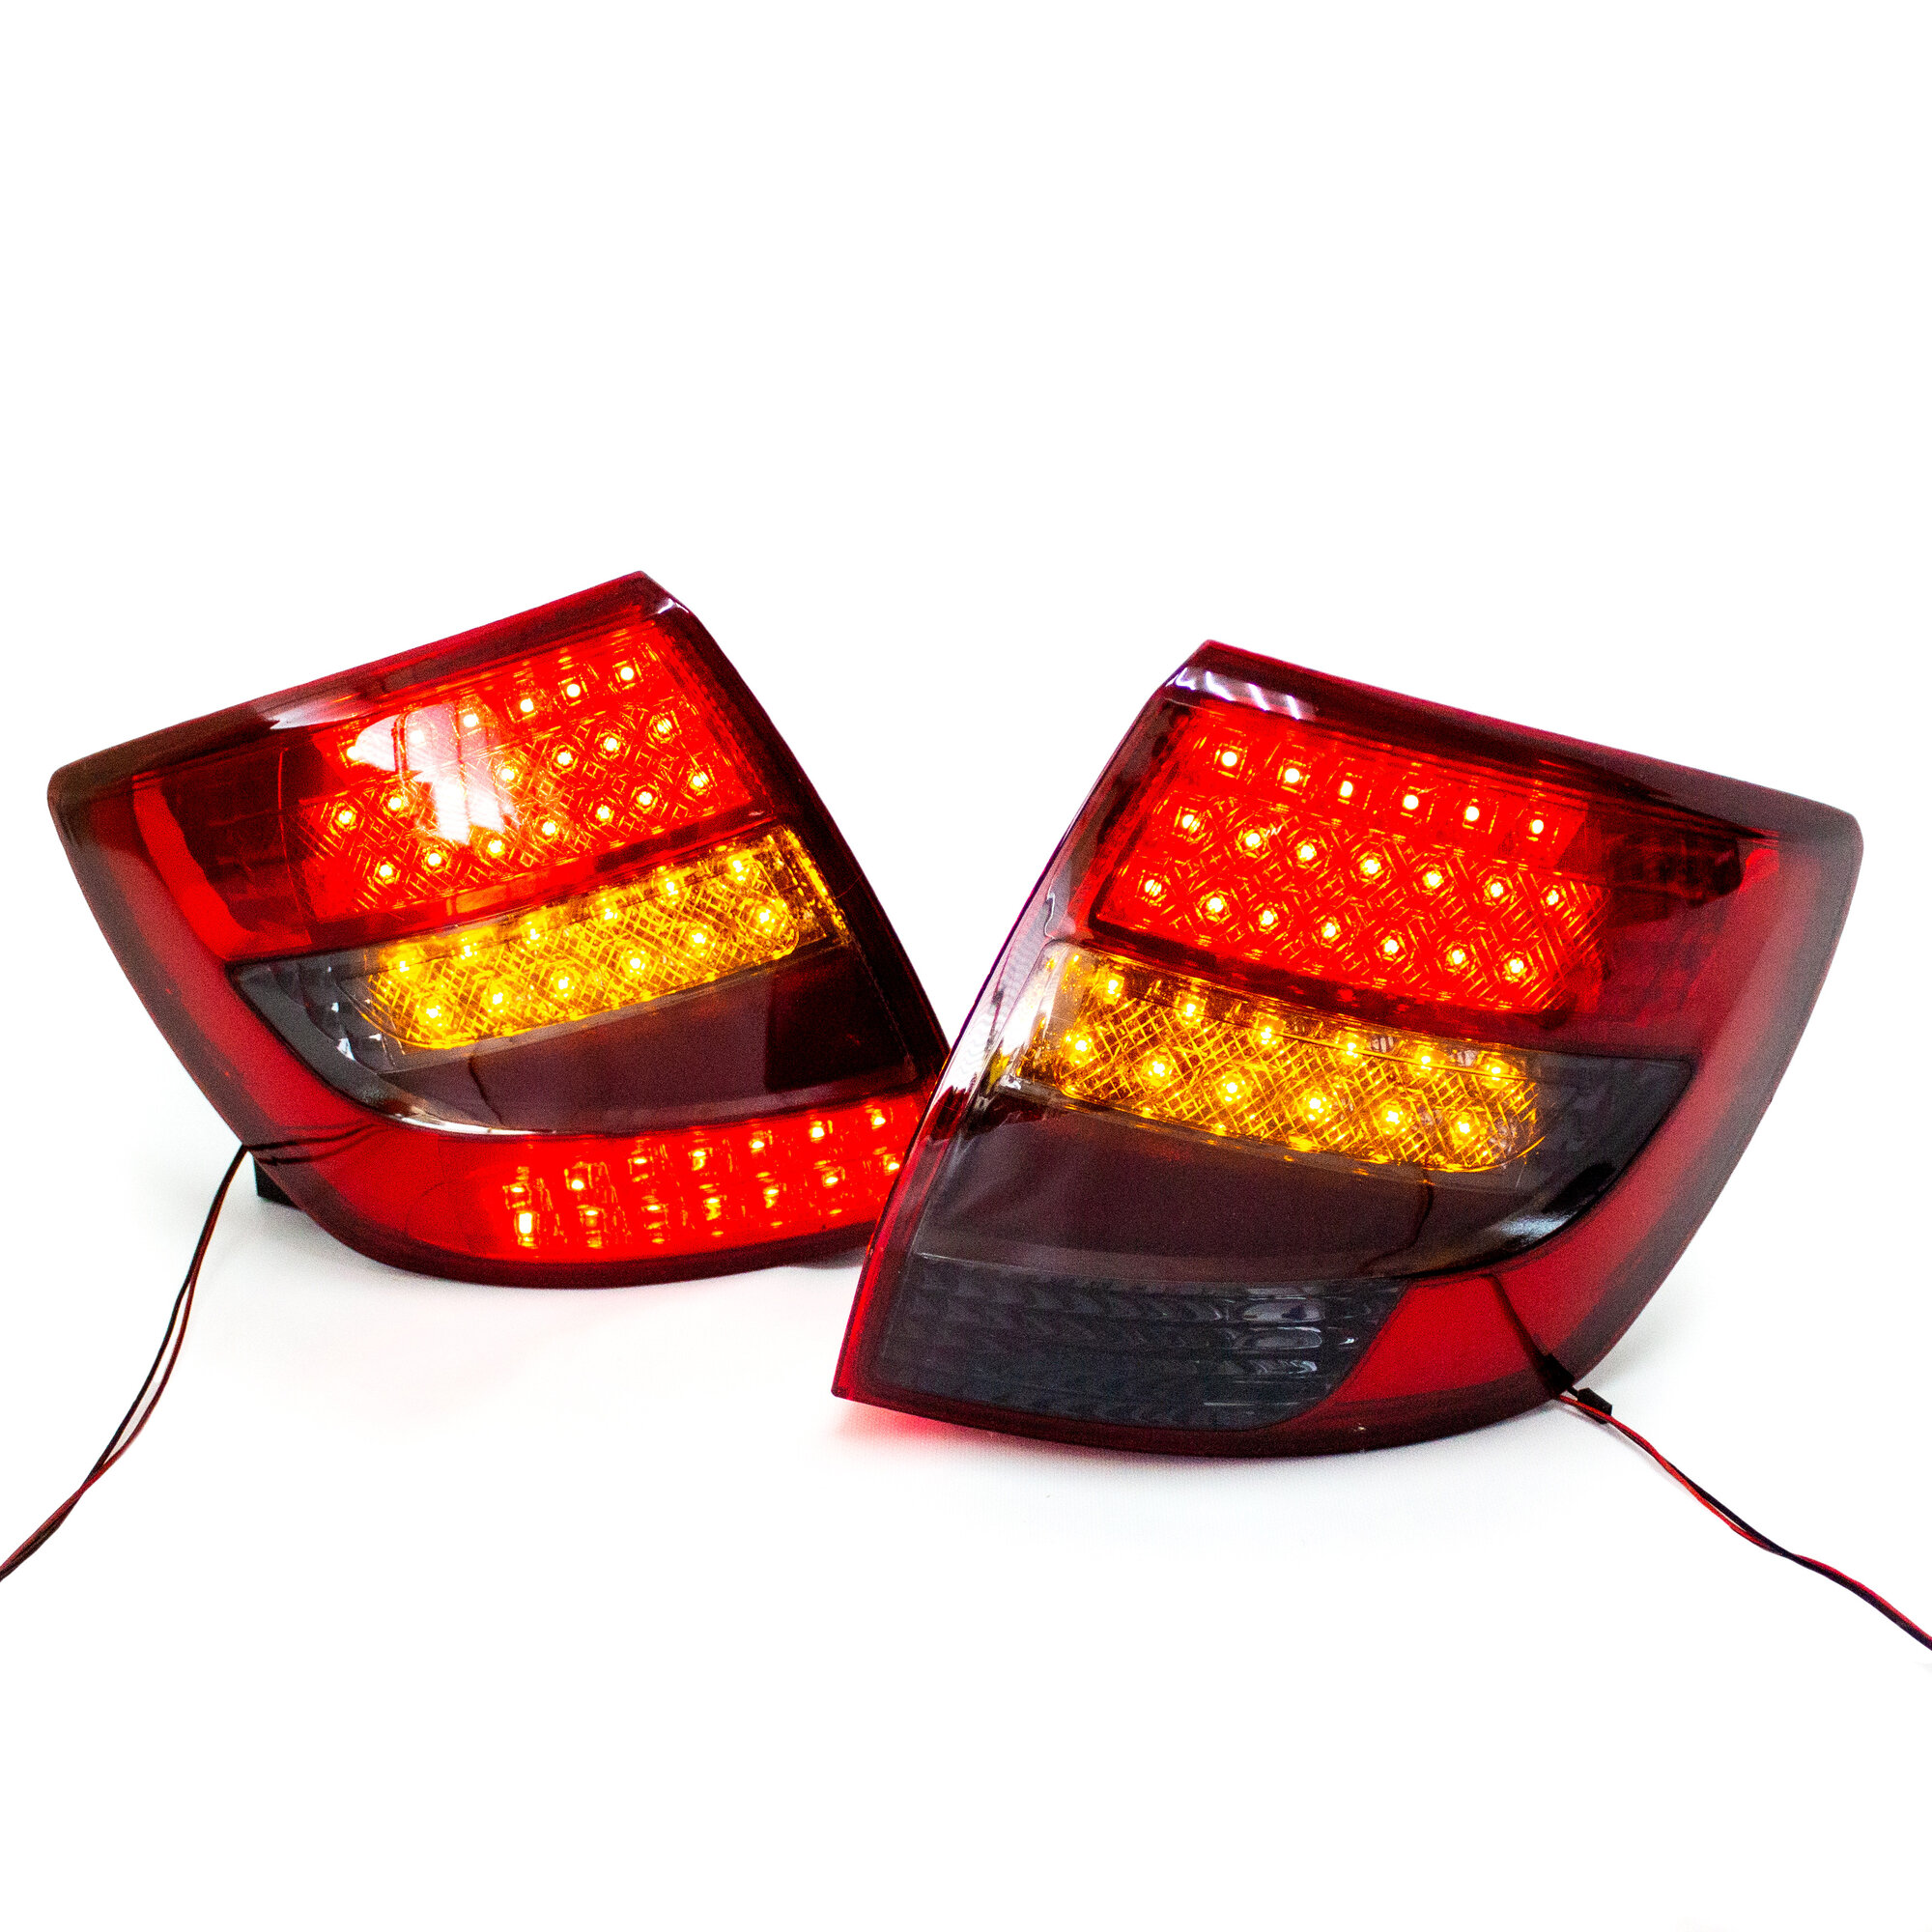 Задние фонари Гранта седан, Гранта FL седан диодные левый правый задний фонарь Lada Granta красно-серые (310 LED) с плавающими поворотниками, комплект 2шт.